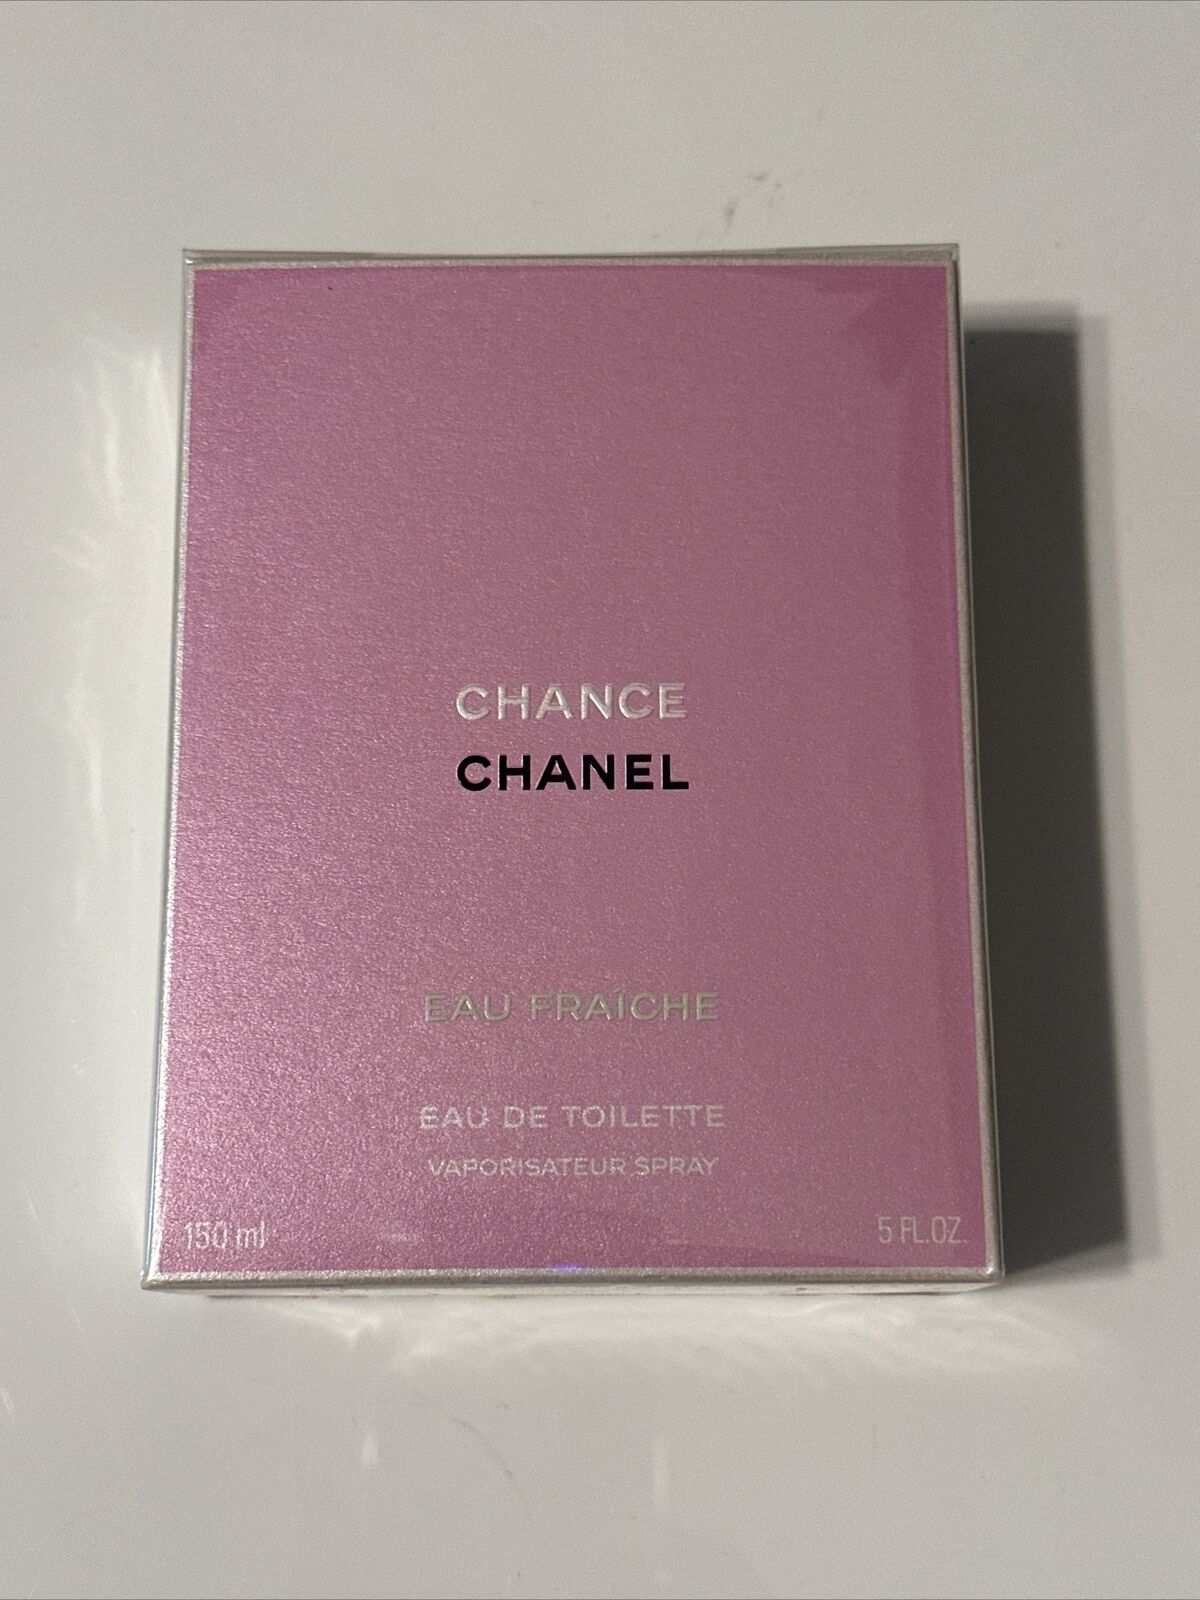 CHANEL+Chance+Eau+Fra%C3%AEche+for+Women+3.4+fl+oz+Eau+de+Toilette+Spray  for sale online